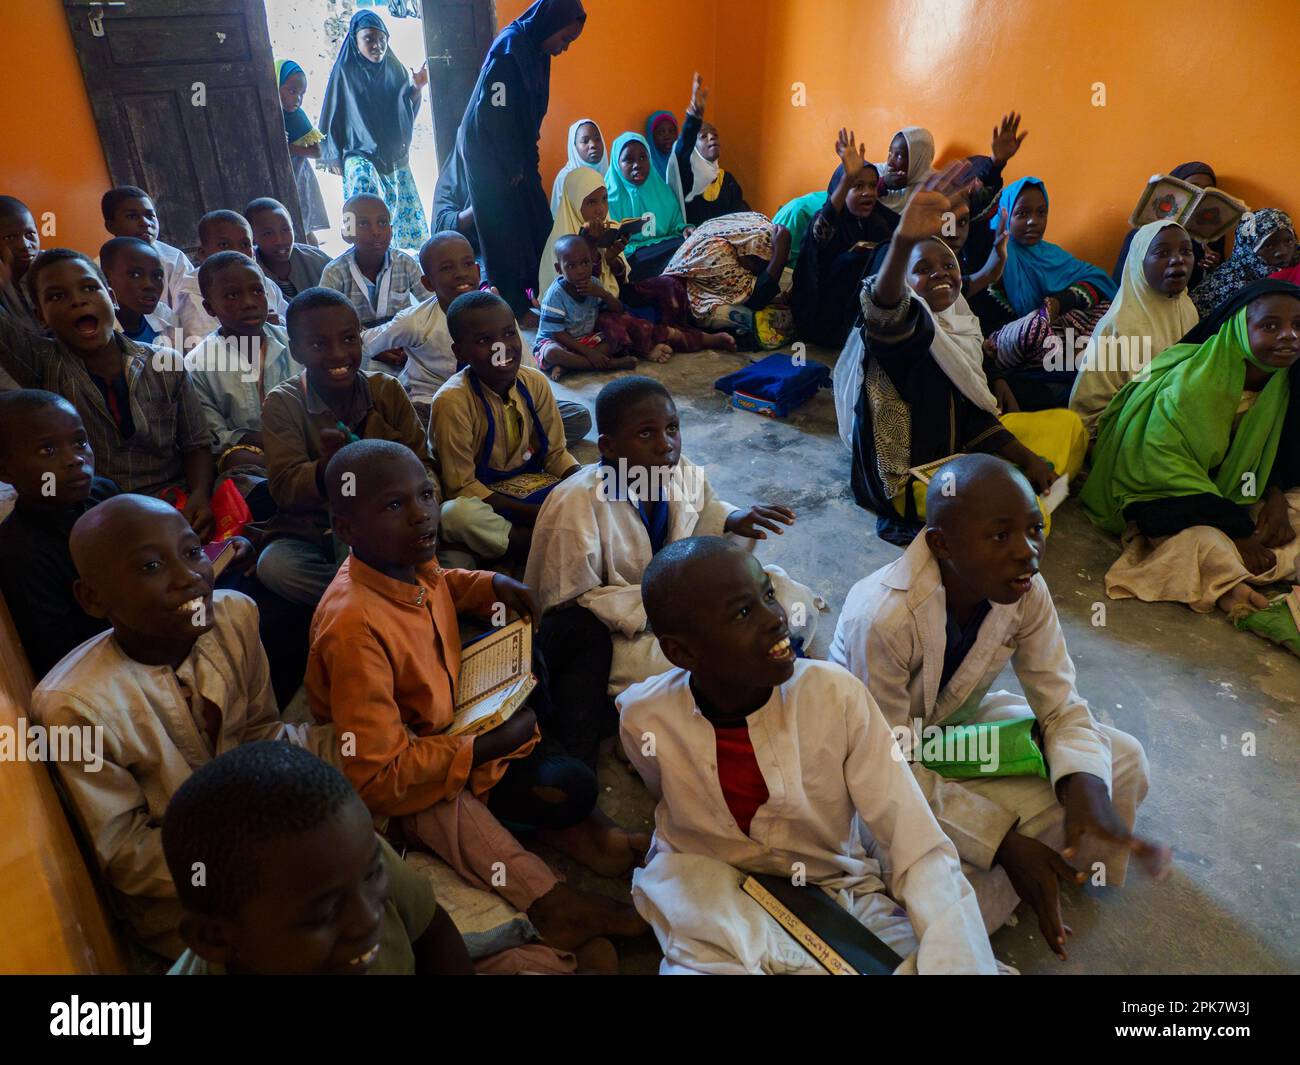 Zanzibar, Tanzanie - janvier 2021: Enfants dans une école musulmane dans un petit village de Zanzibar. Tanzanie, Afrique Banque D'Images